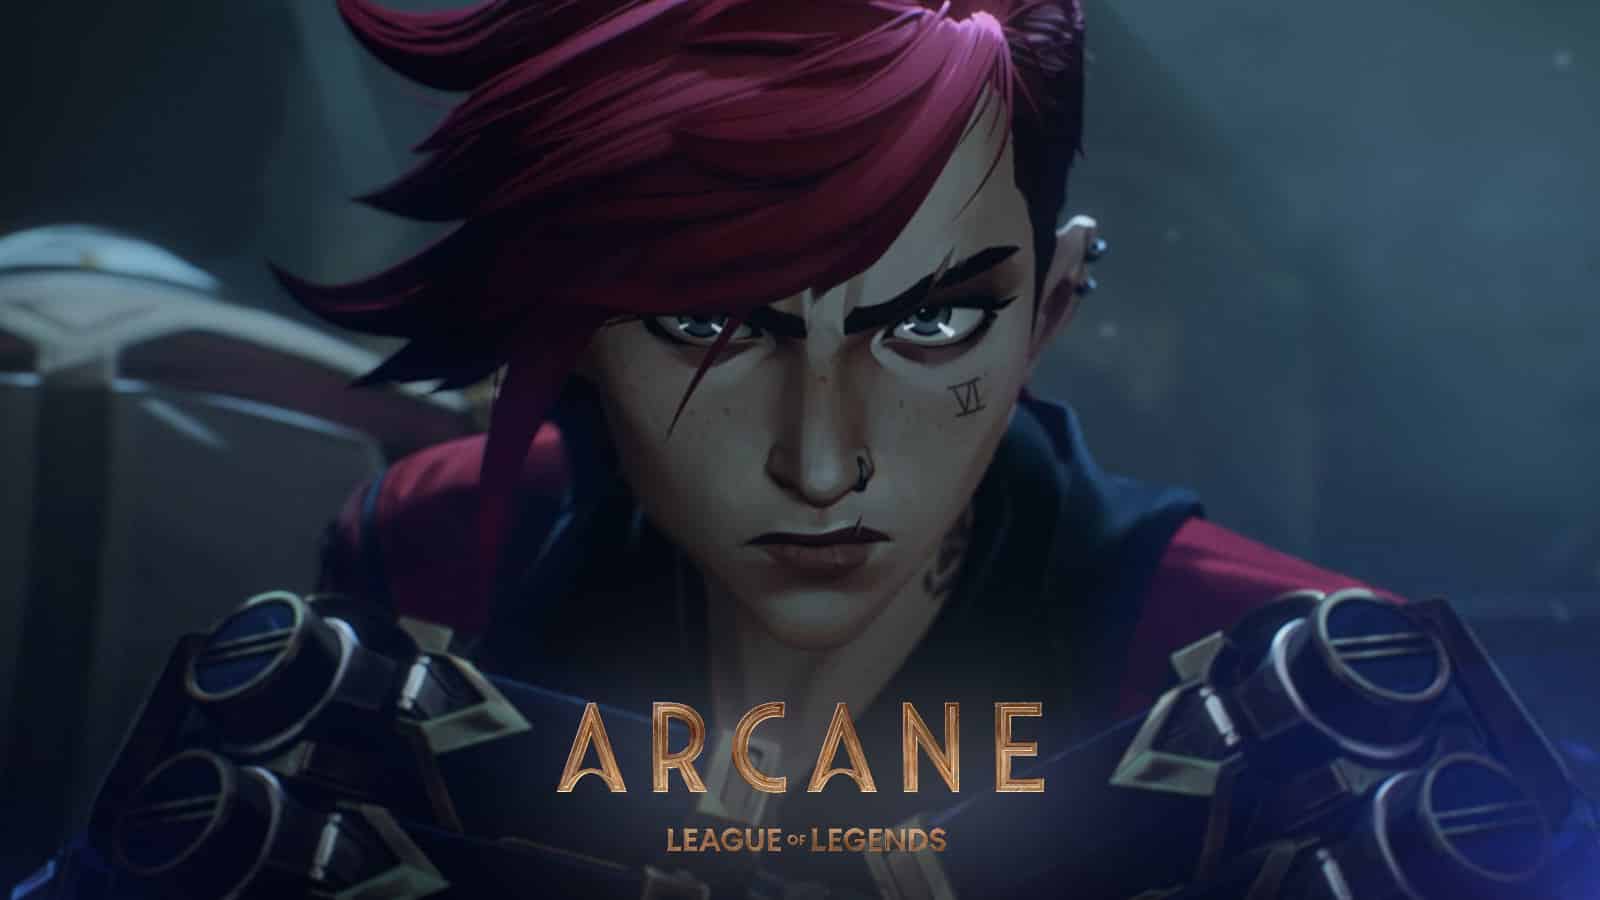 League of Legends Arcane anime Vi glares into camera